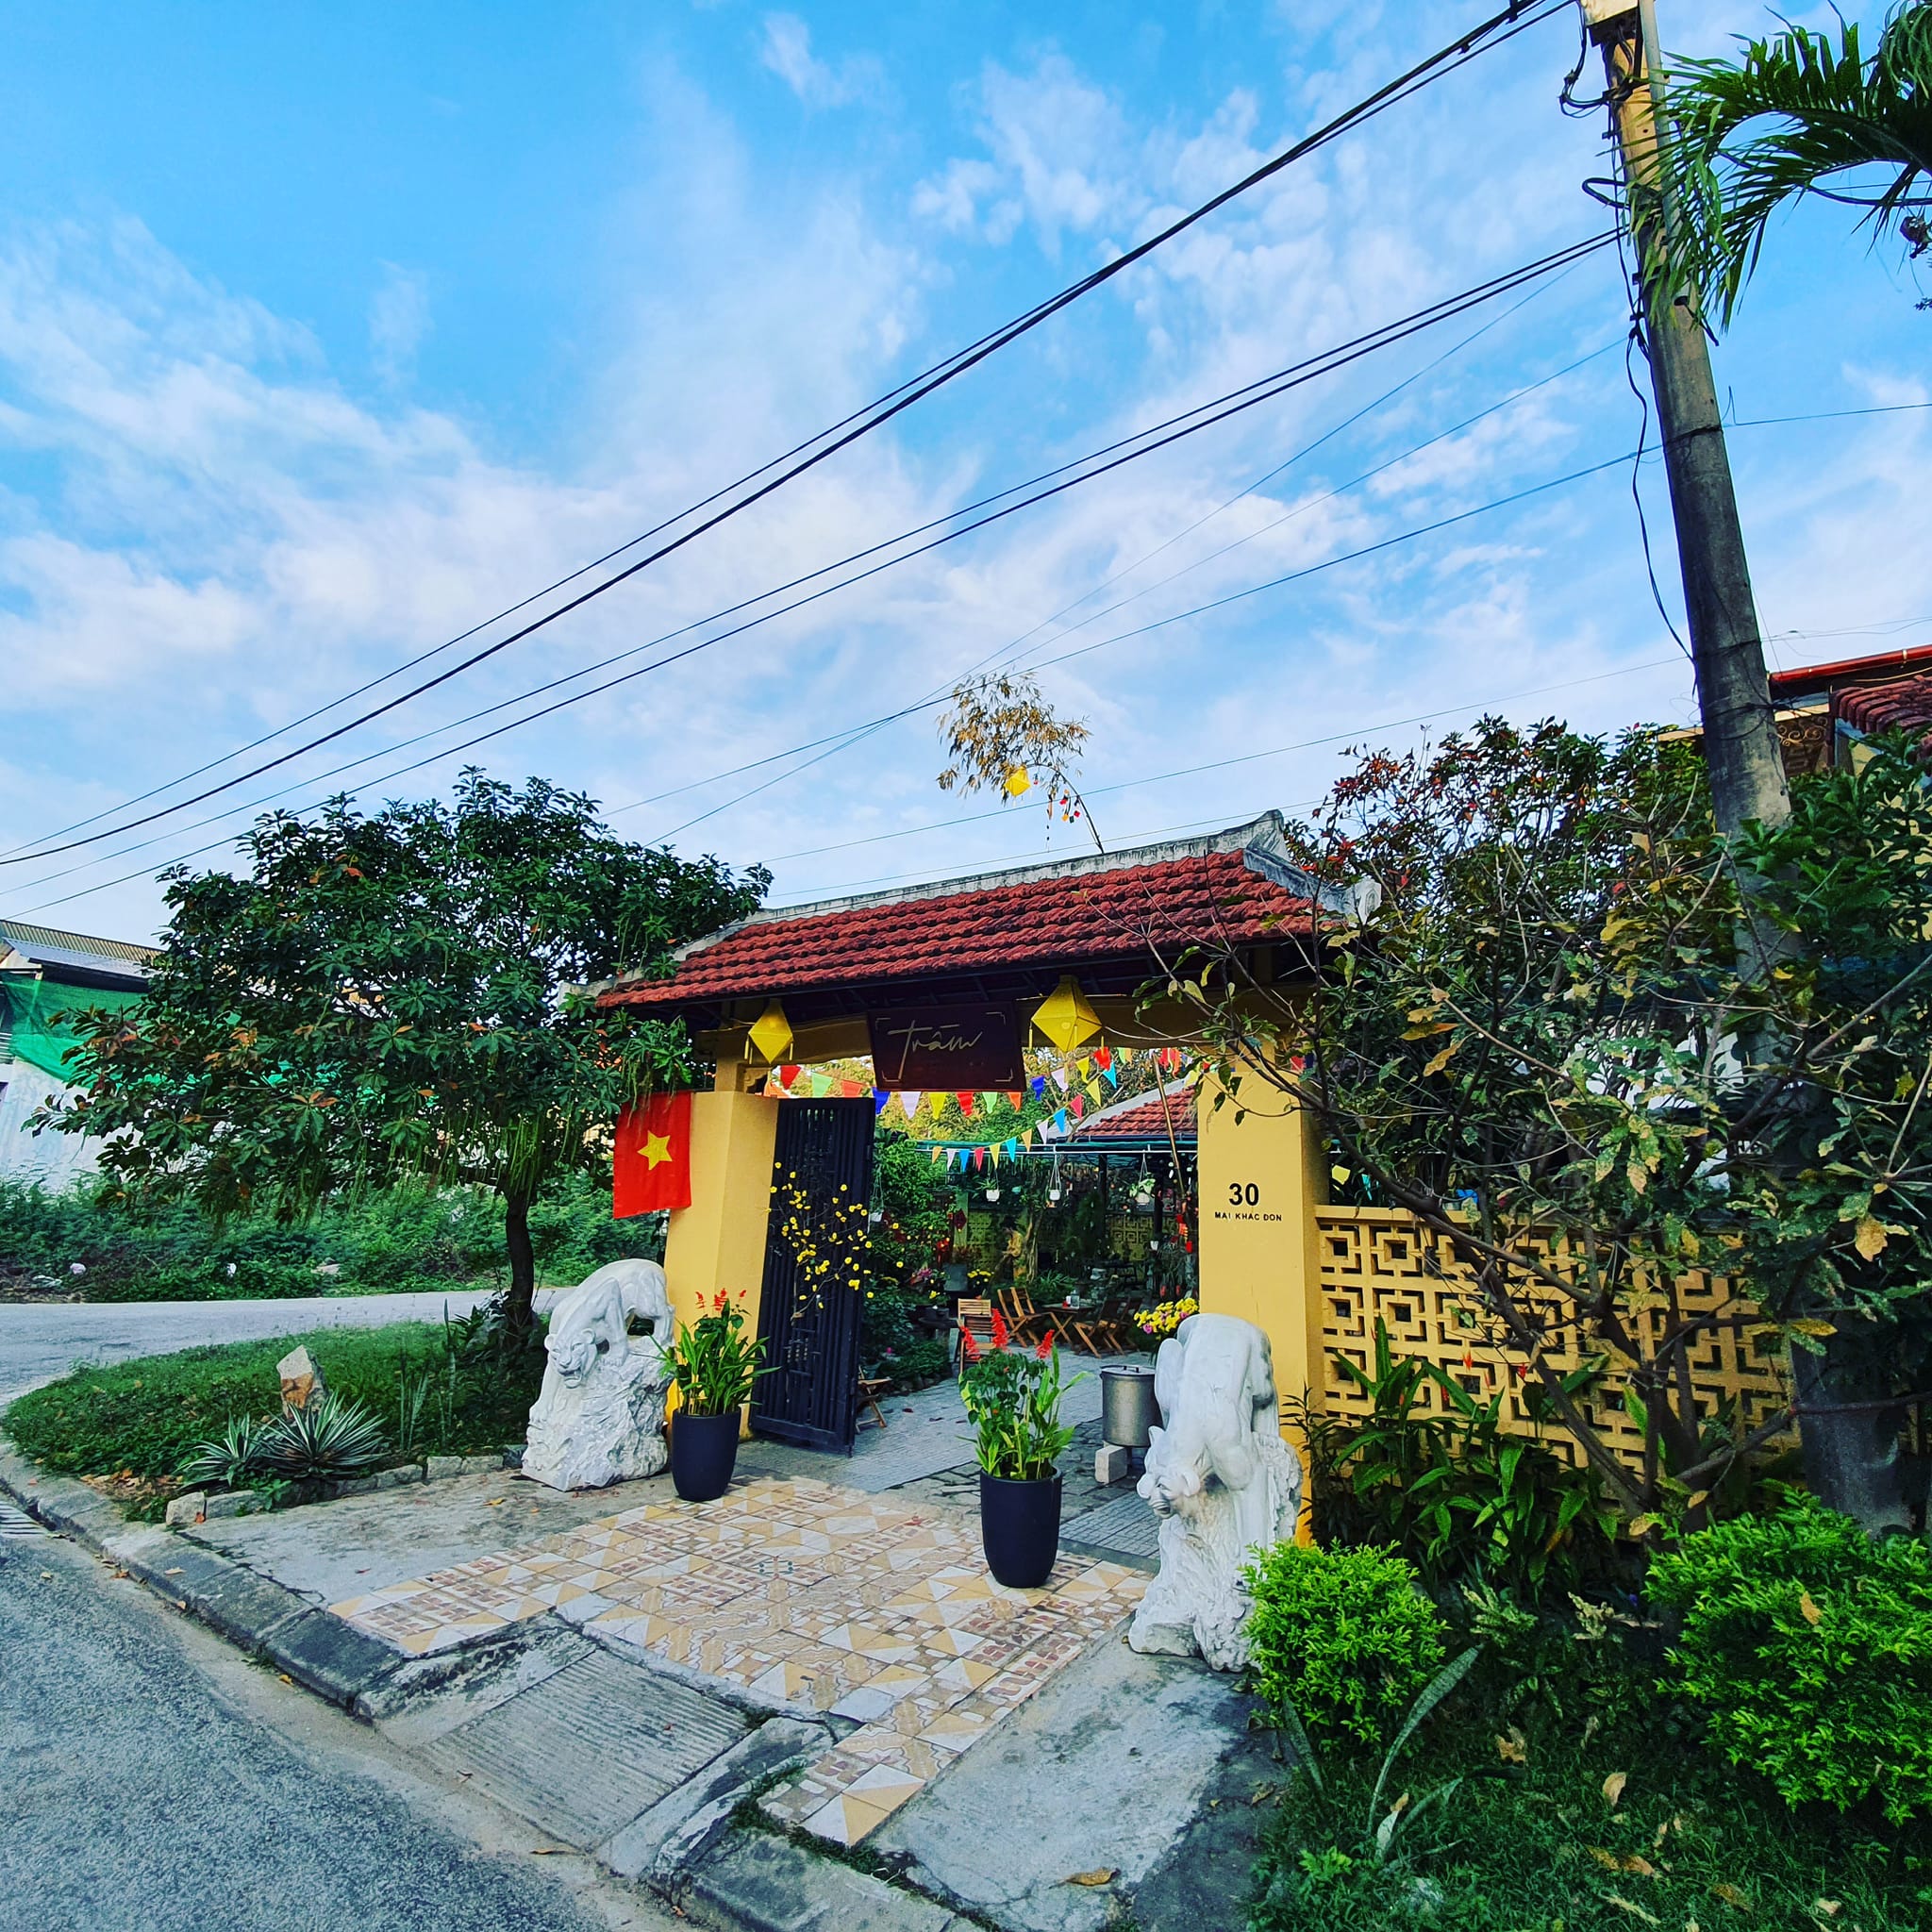 Top 10 homestay đẹp nằm gần trung tâm thành phố Huế 